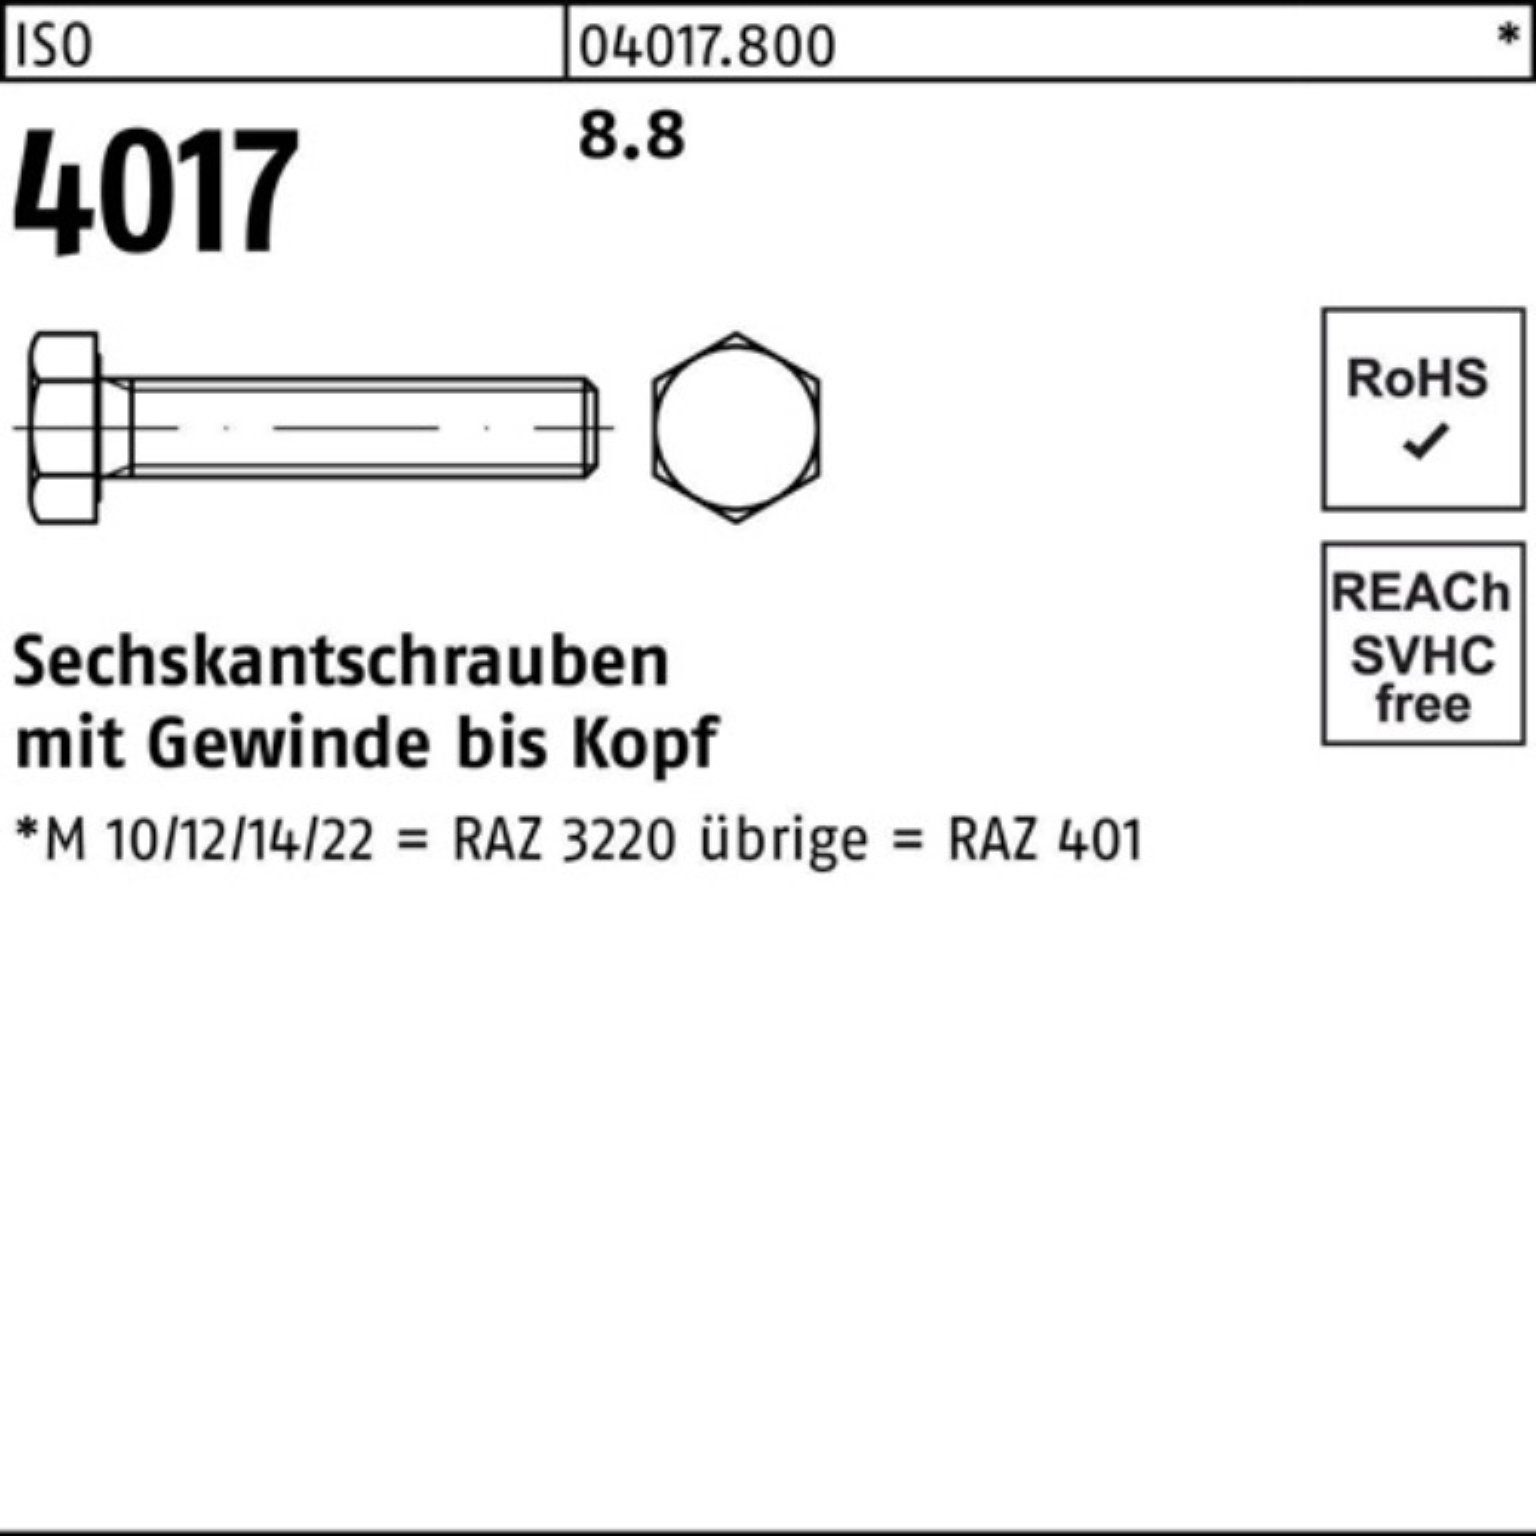 Bufab Sechskantschraube 200er VG M8x Stück 401 4017 8.8 ISO Sechskantschraube 200 65 ISO Pack